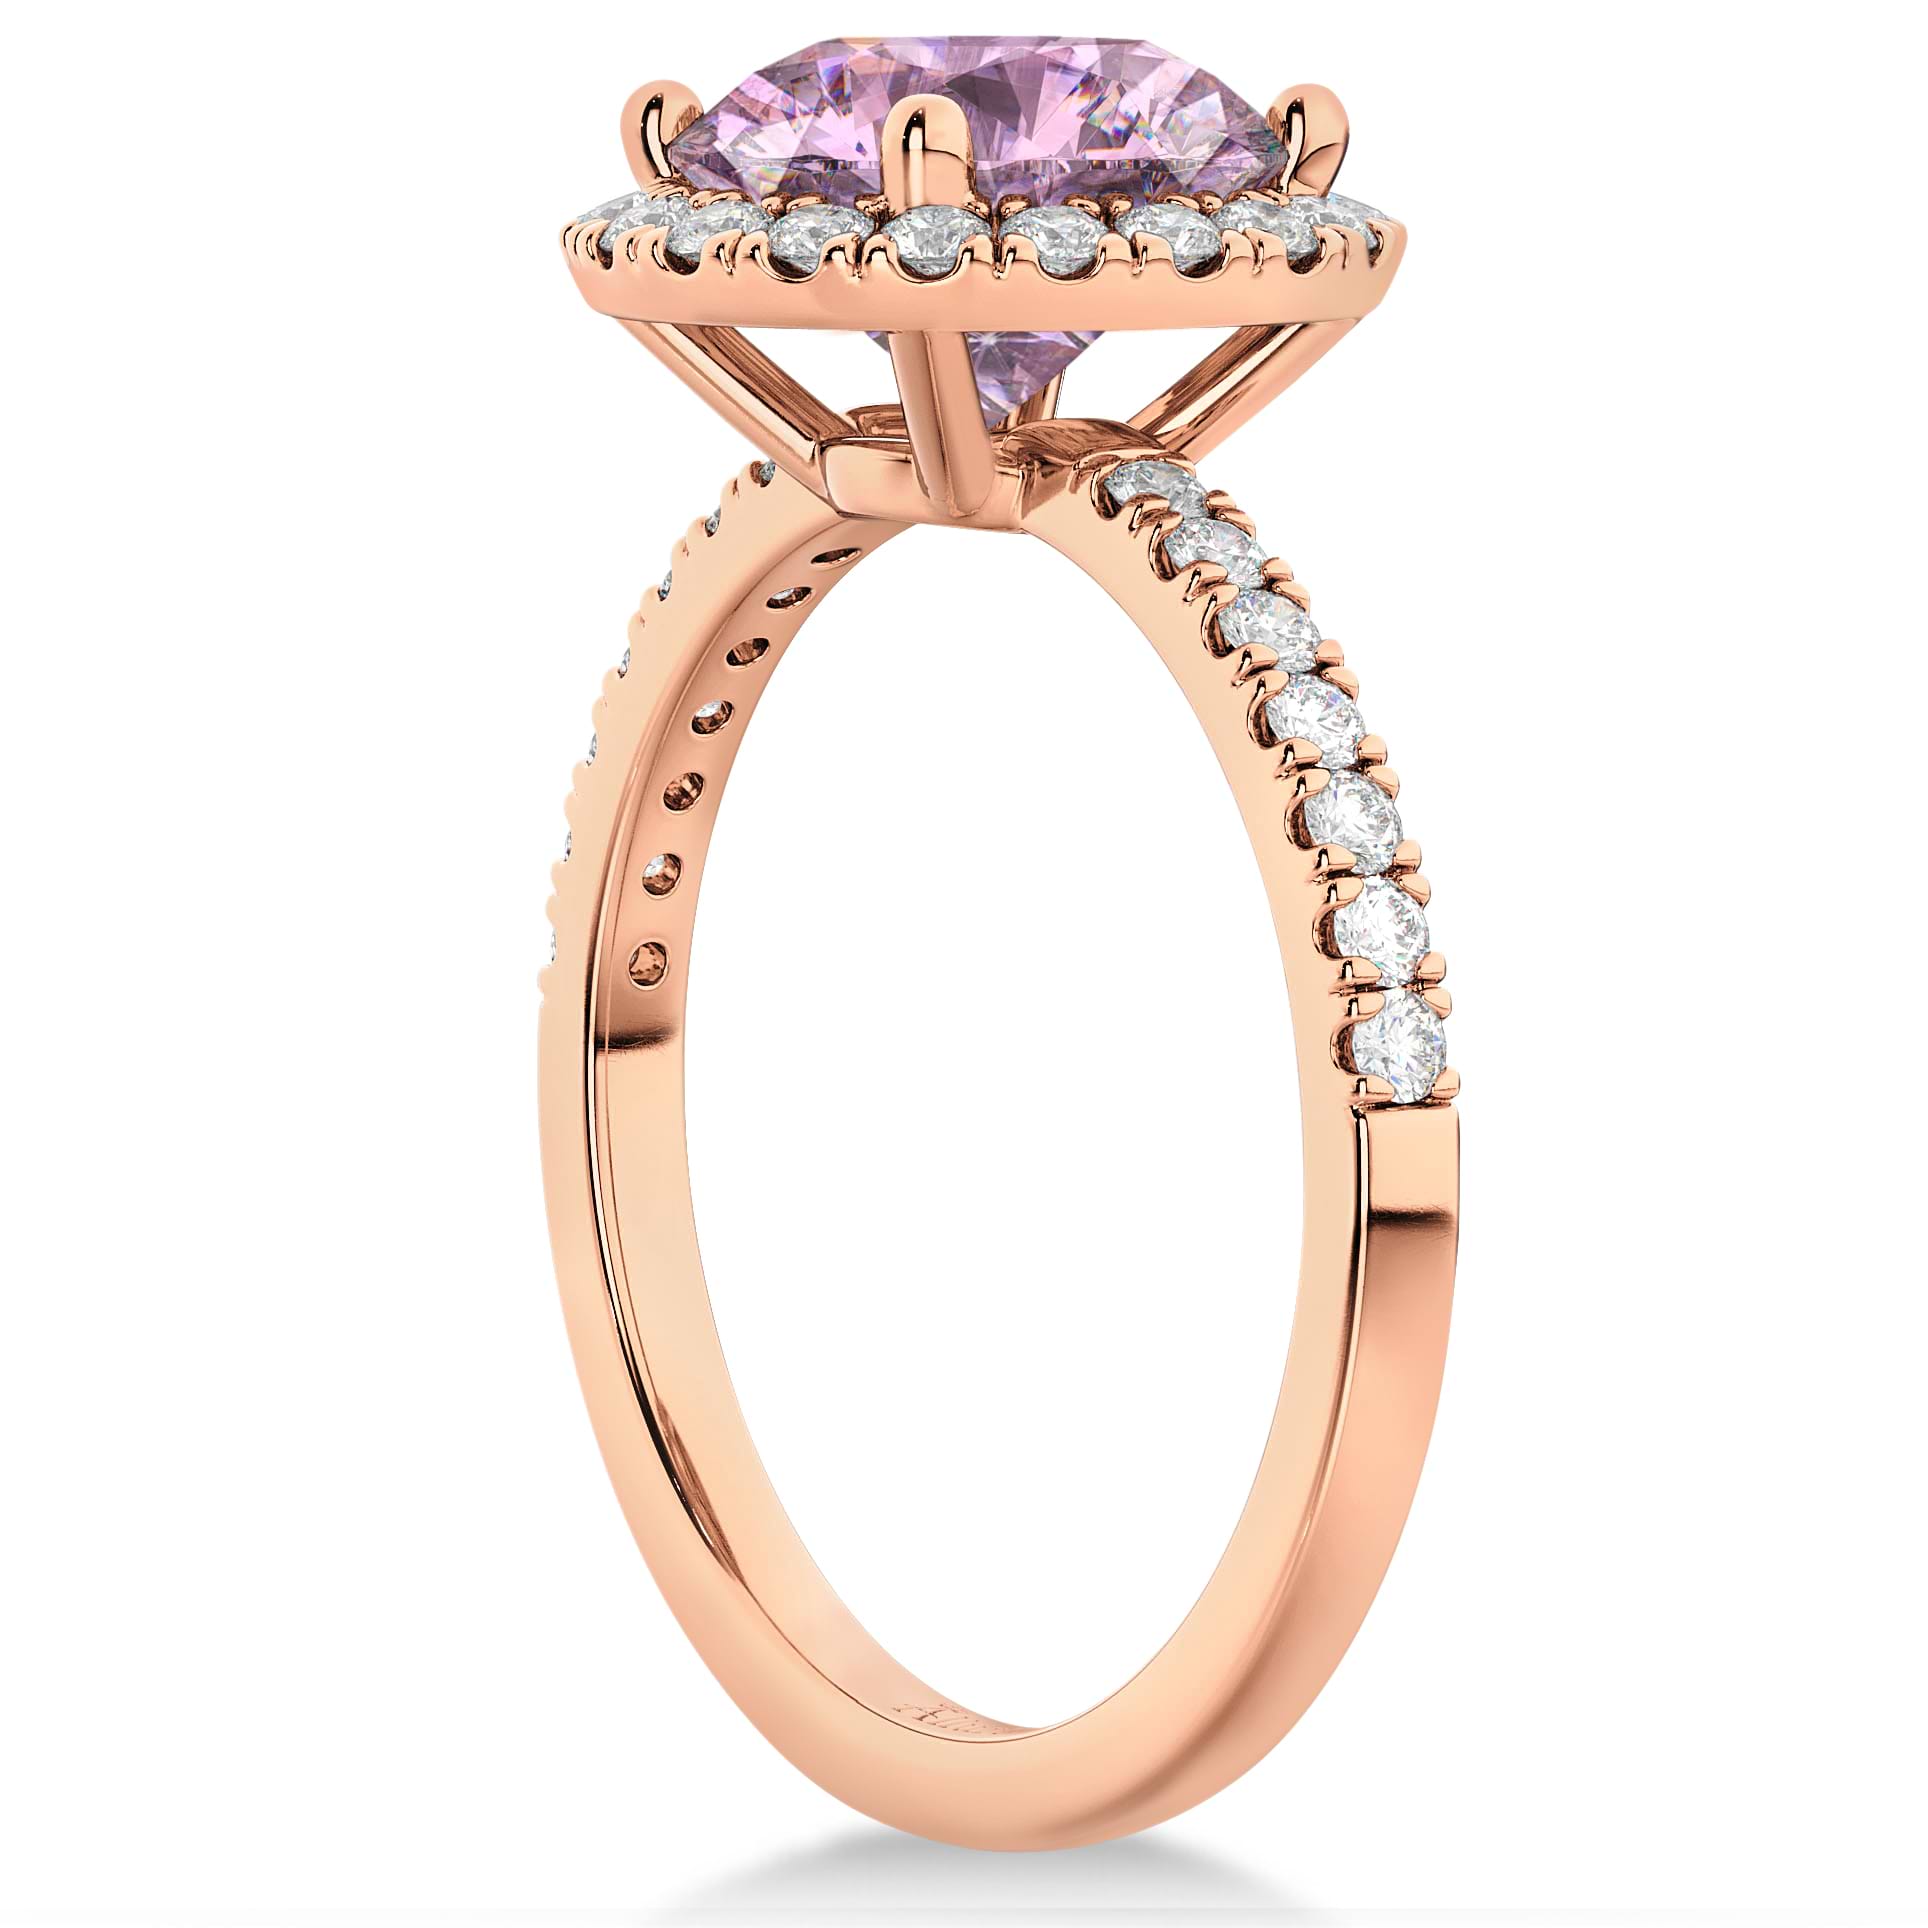 Halo Pink Moissanite & Diamond Engagement Ring 18K Rose Gold 2.10ct